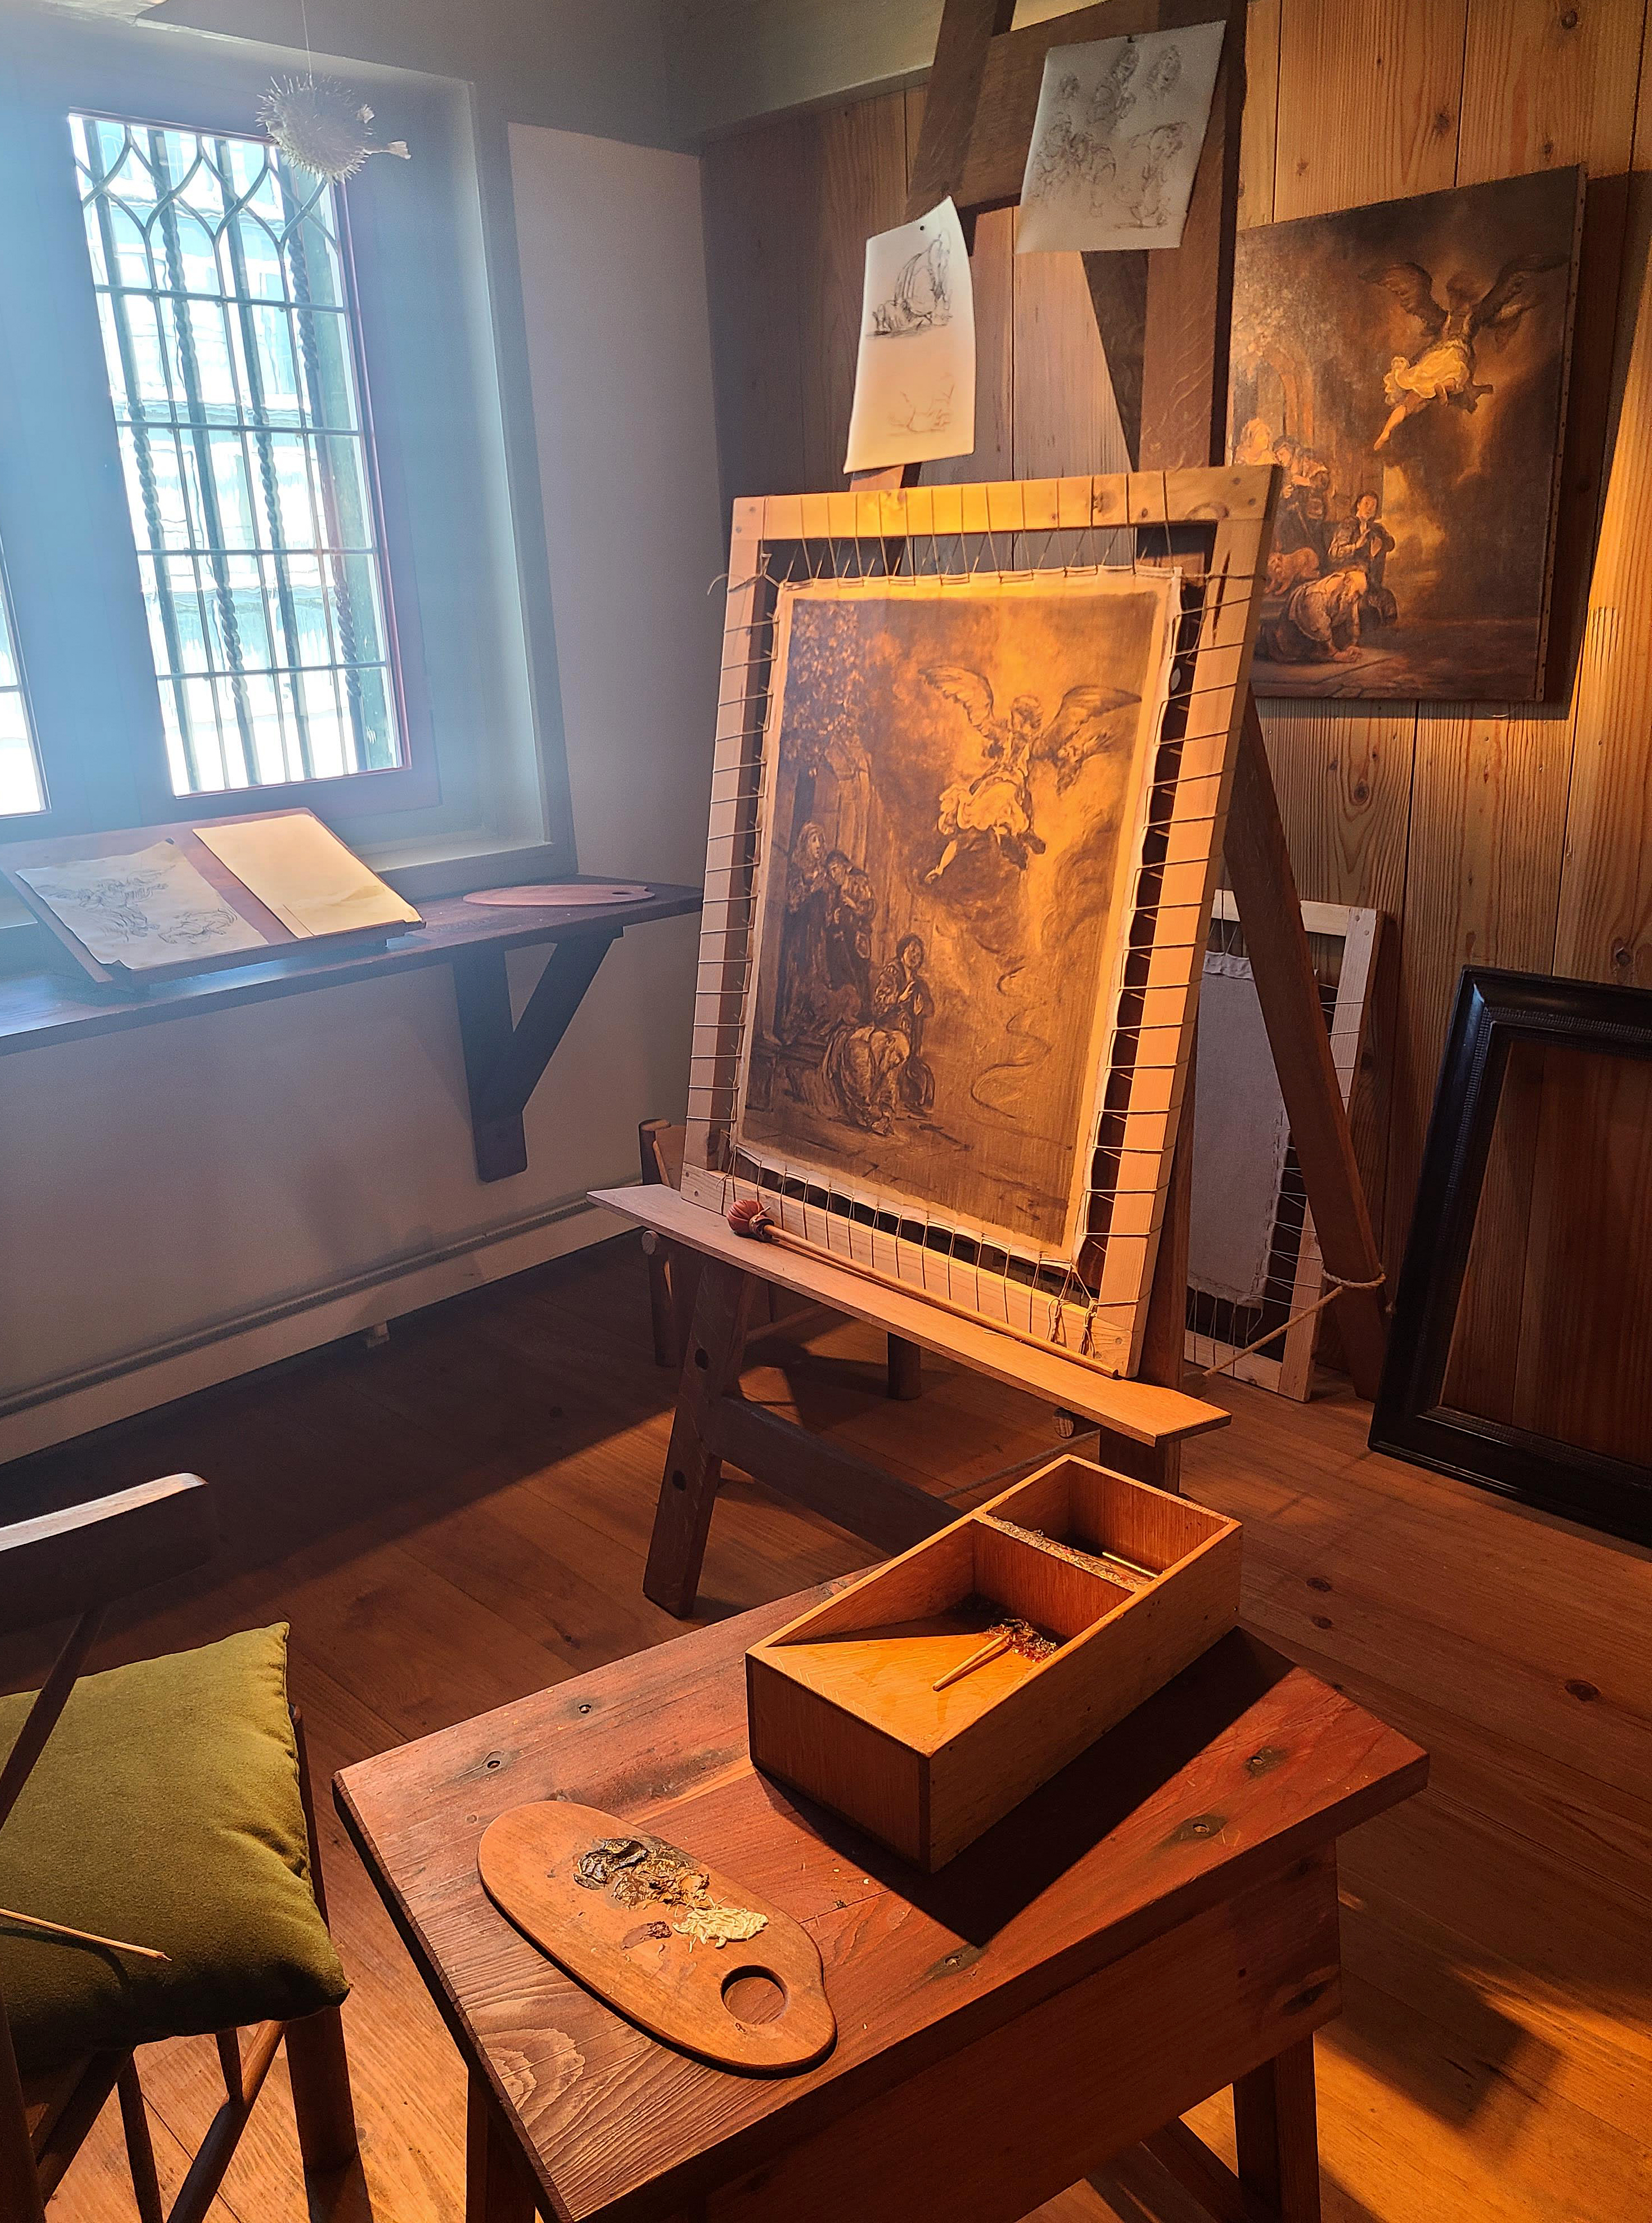 네덜란드 암스테르담 렘브란트 하우스에는 당시 그가 작품을 그렸던 작업실을 볼 수 있다.